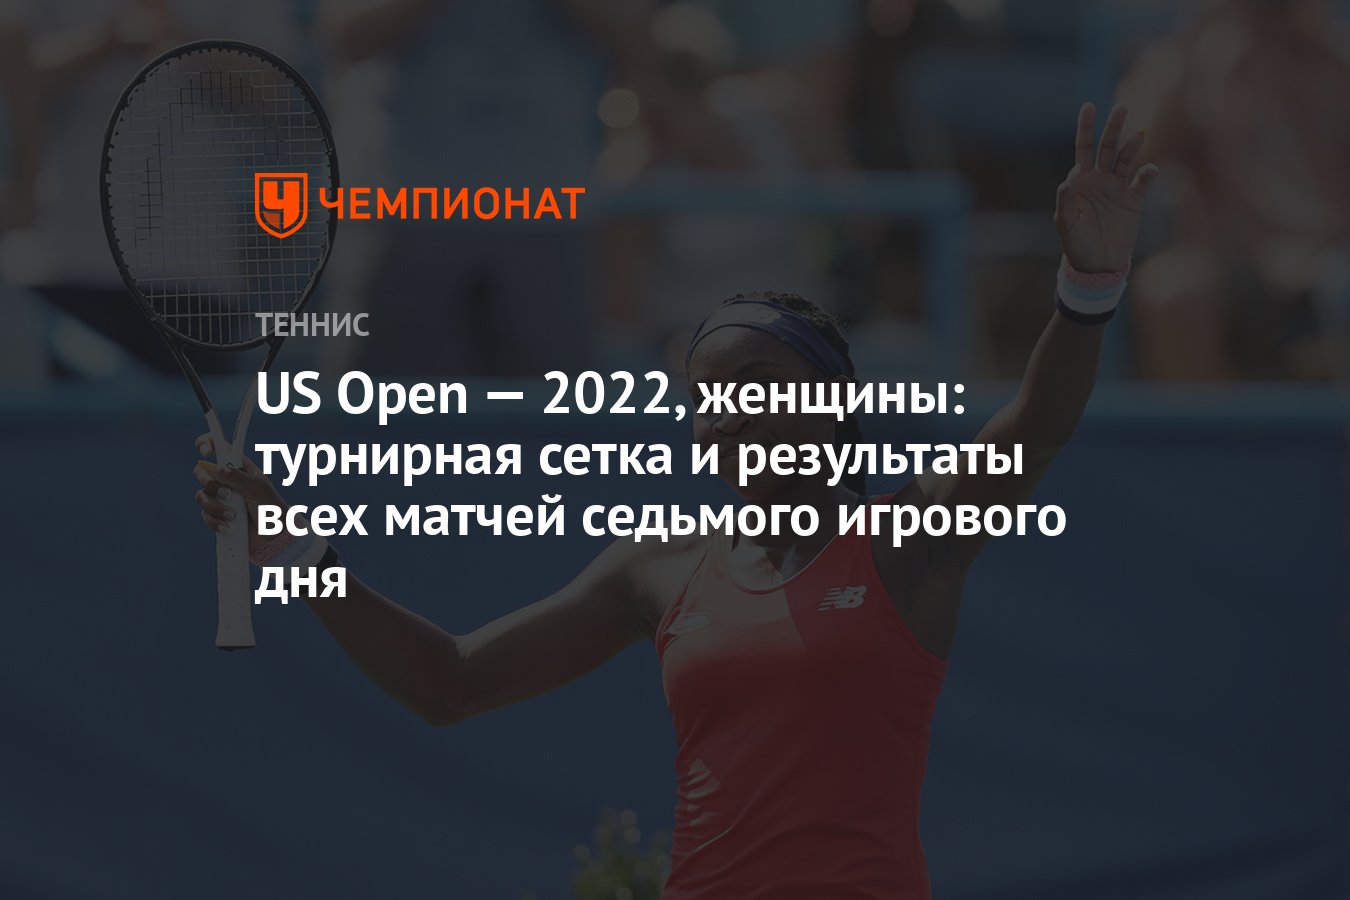 Теннисная сетка дубай 2024 женщины